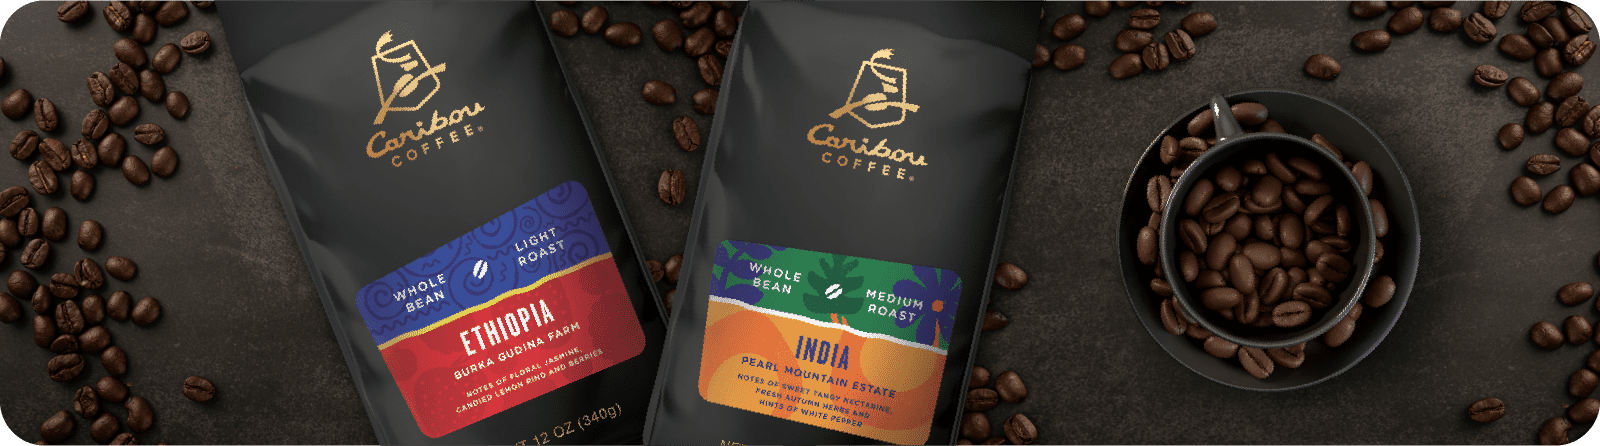 Ethiopia and India Single Origin Beans